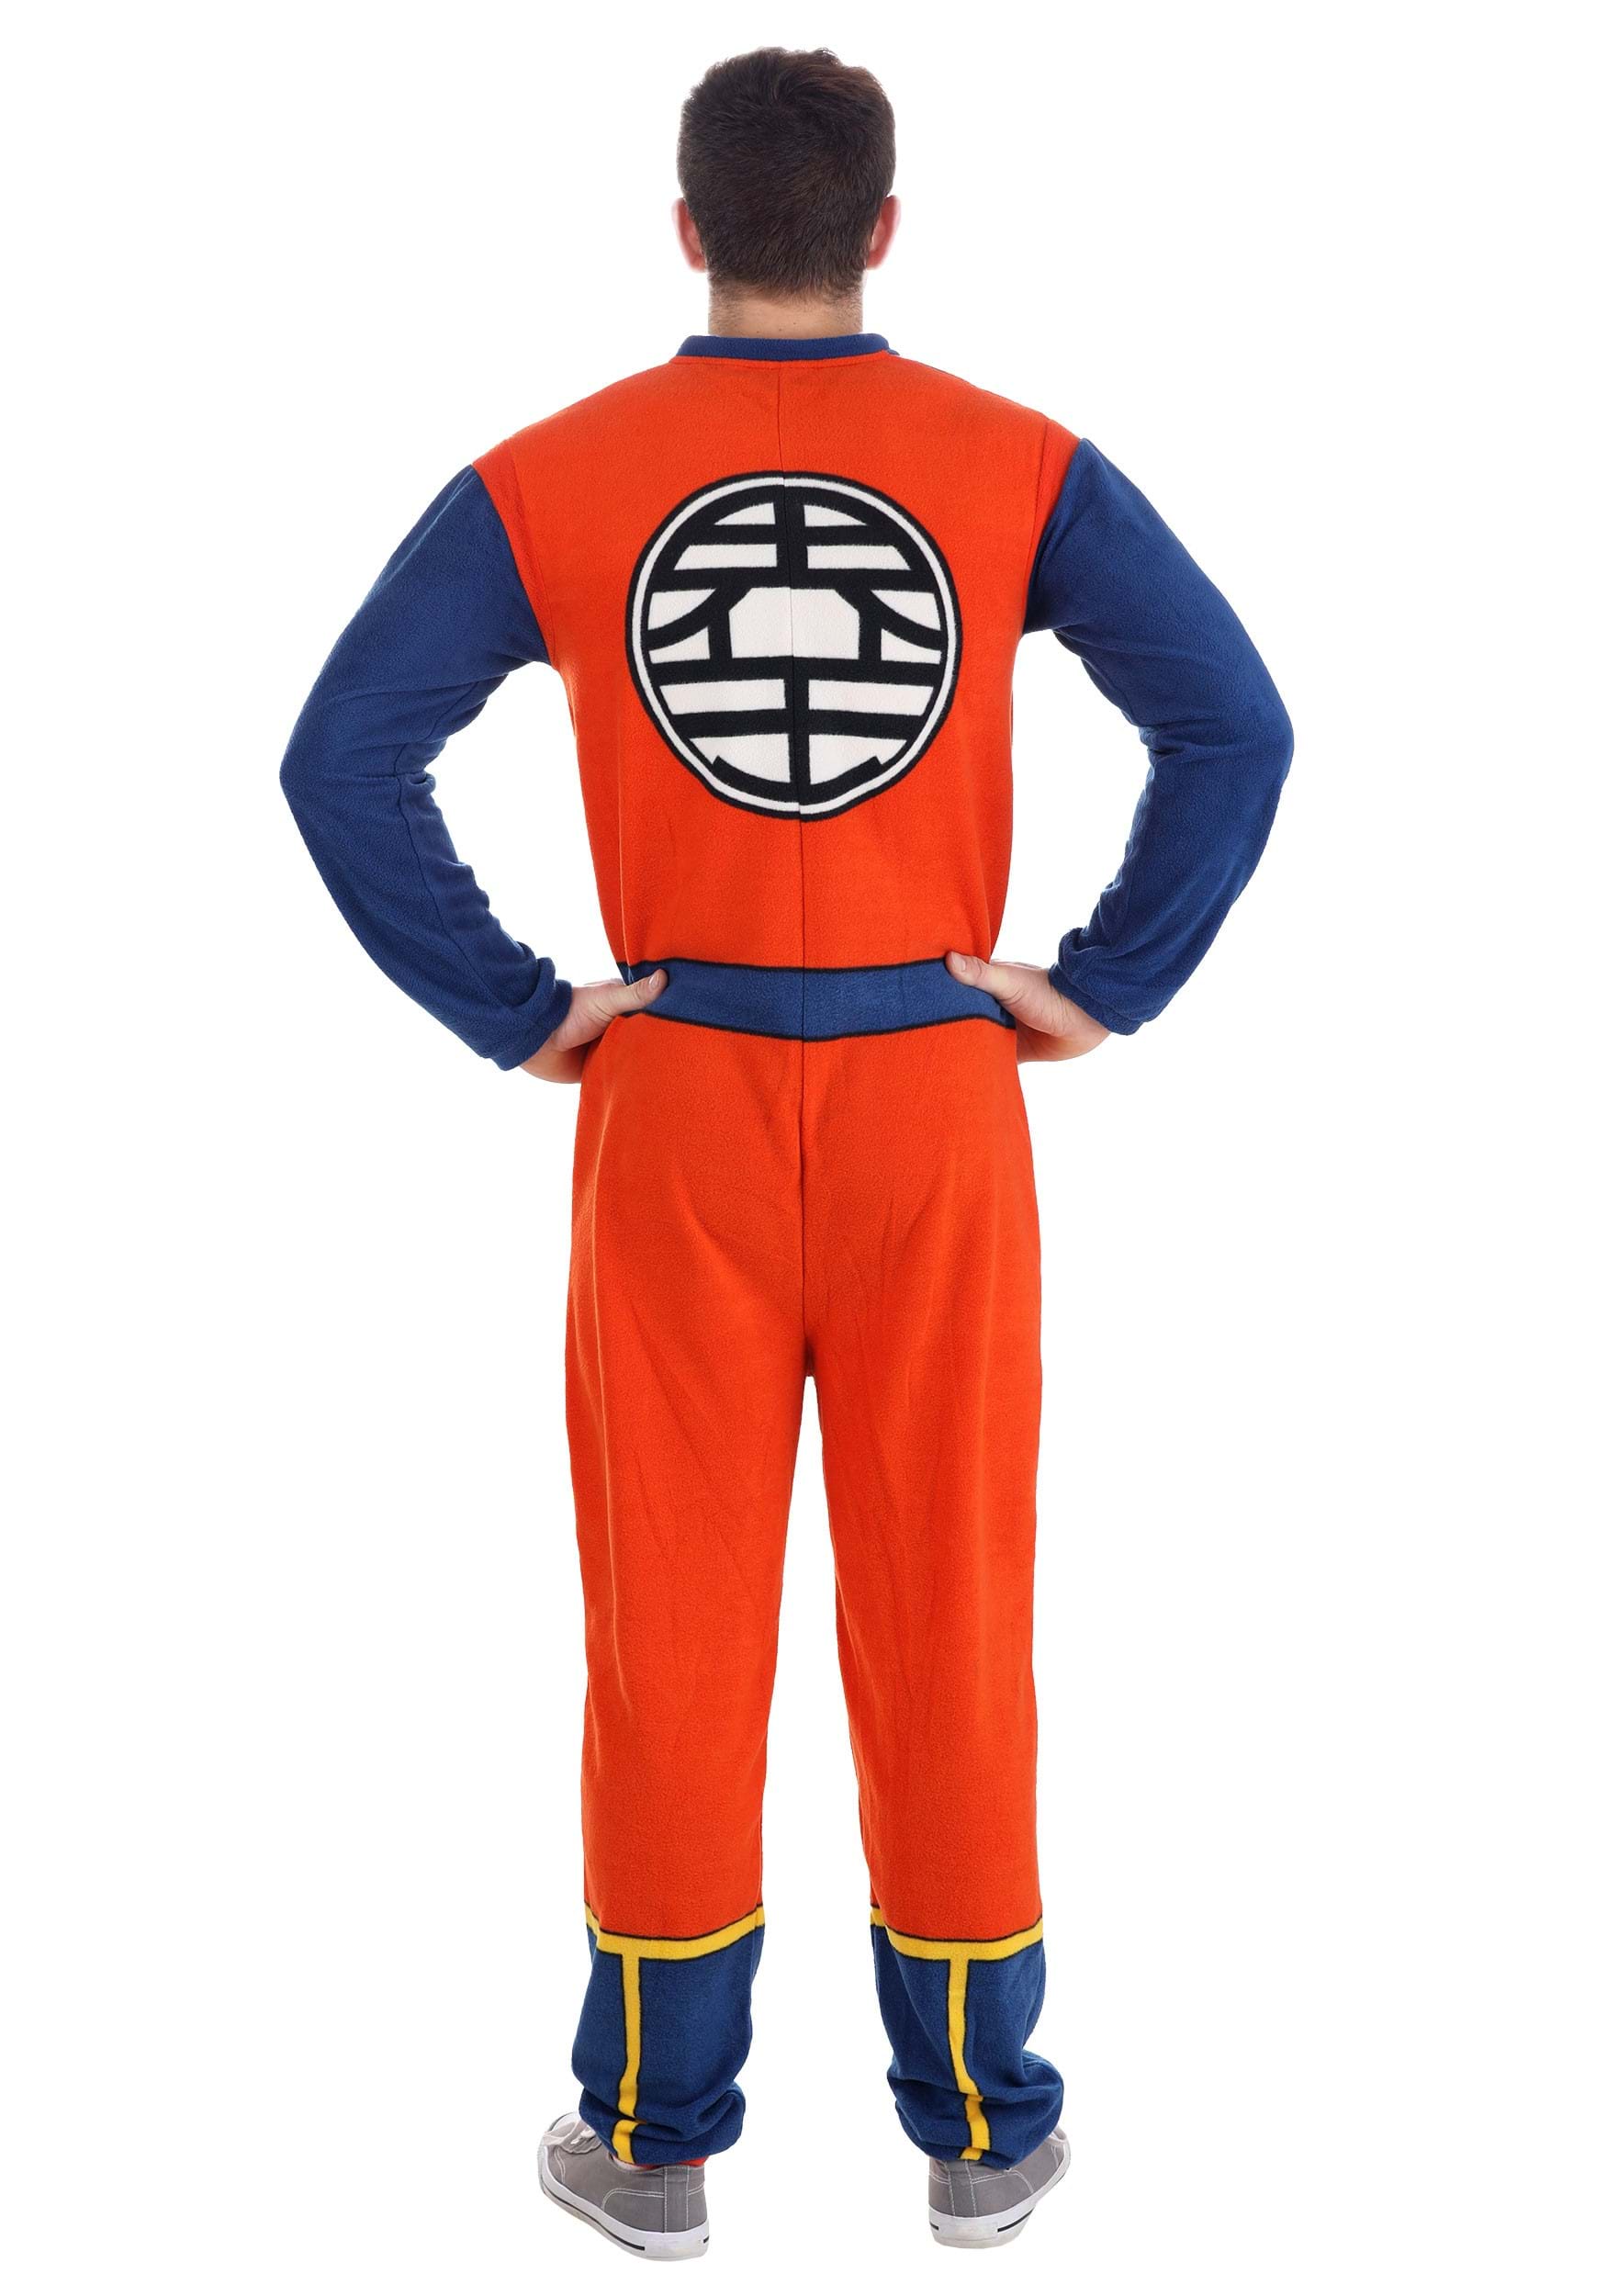 Dragon Ball Z Goku Union Suit